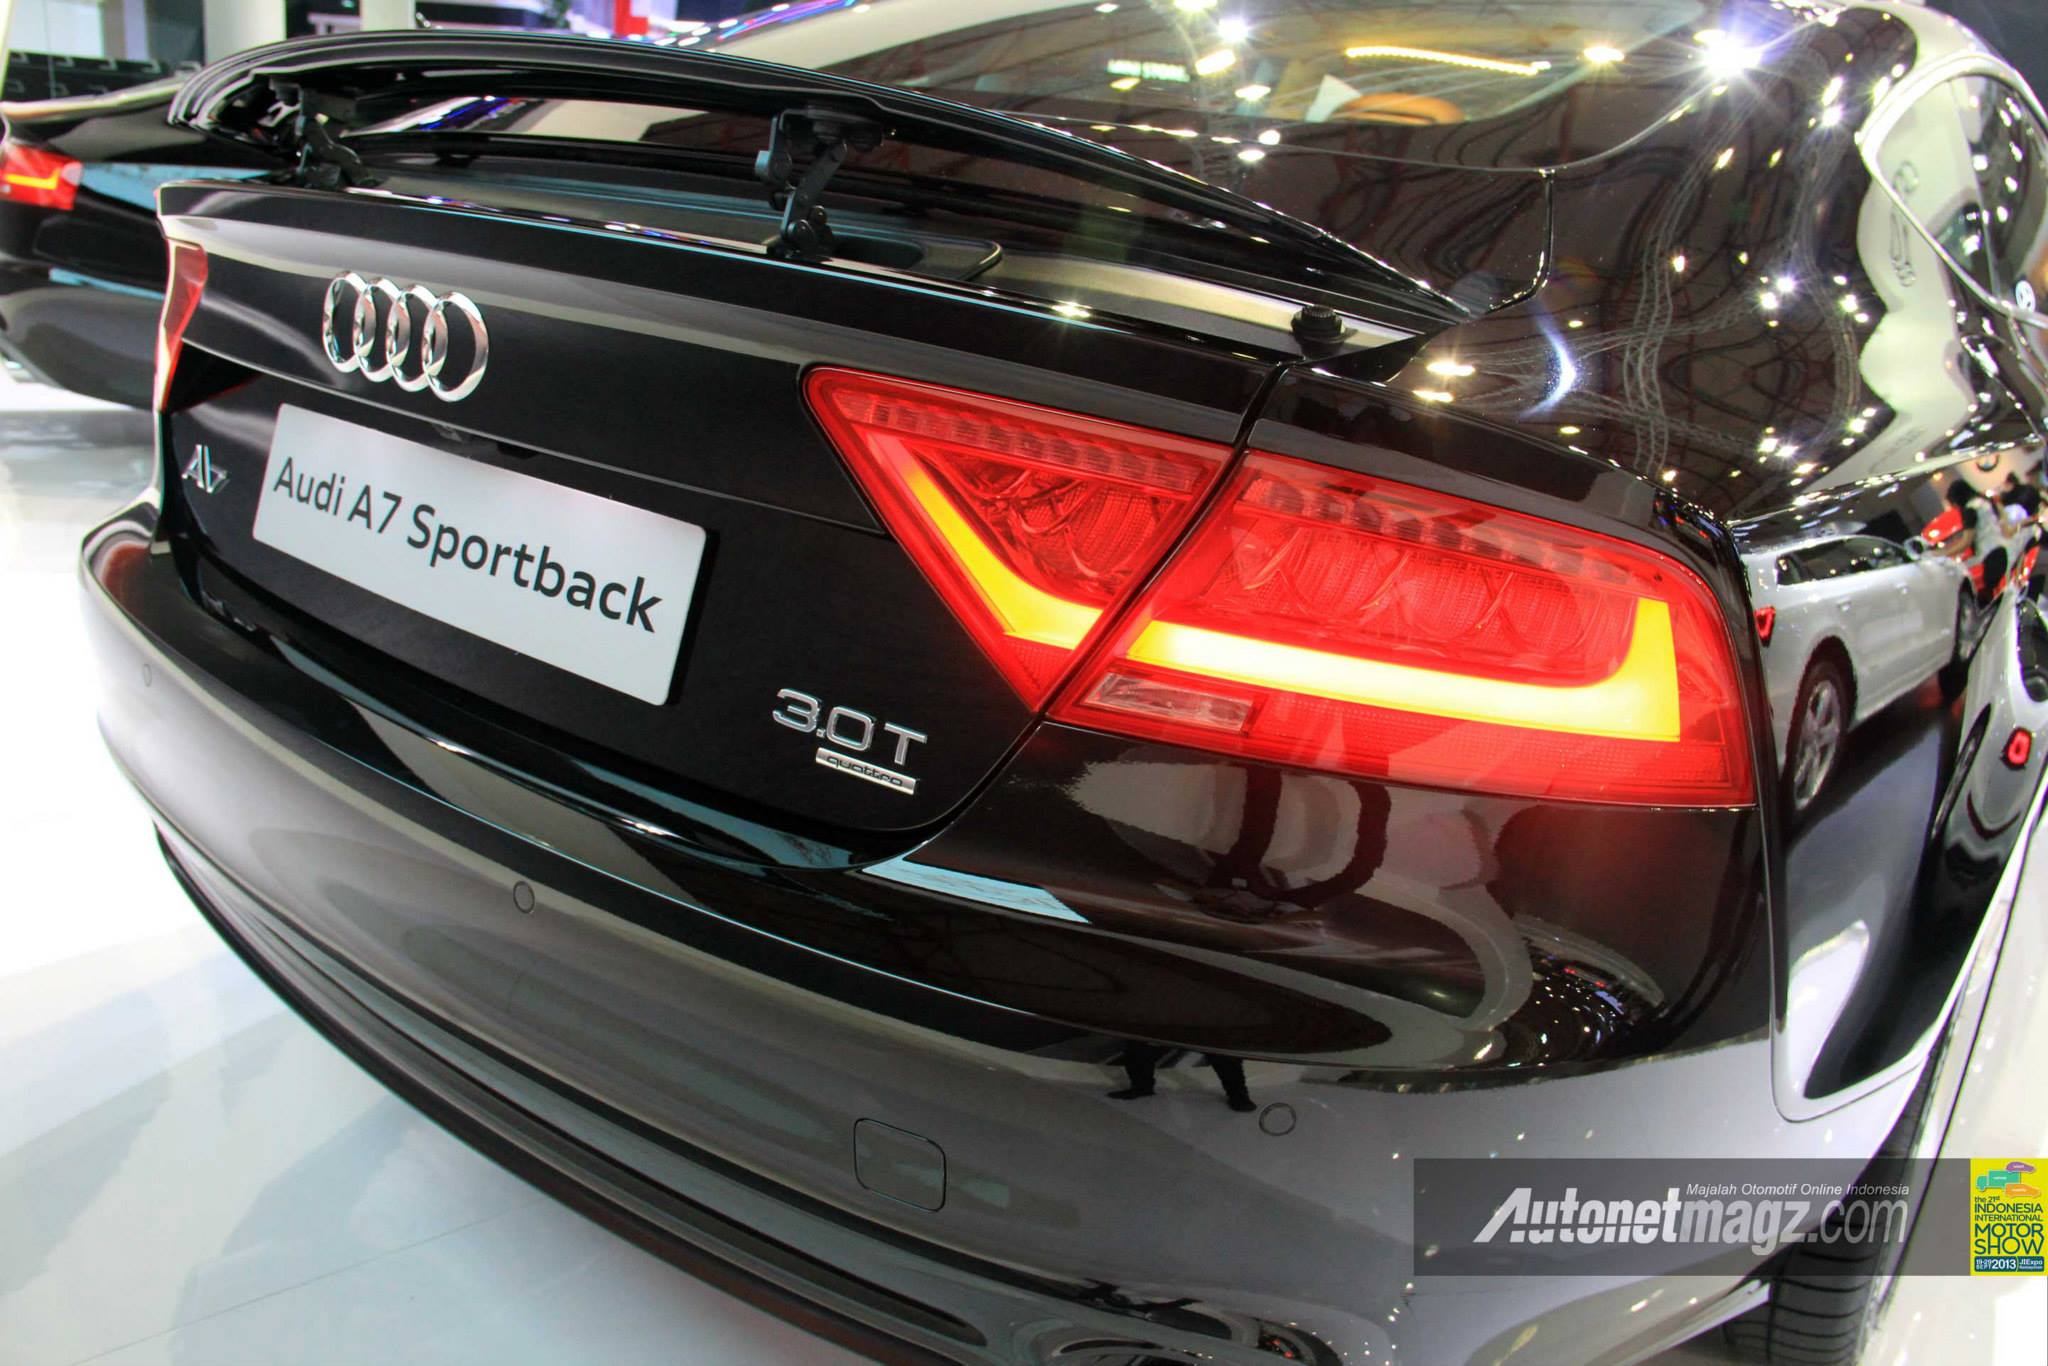 Audi, 2014 Audi A7 Sportback: Audi A7 Sportback Resmi Hadir di Indonesia